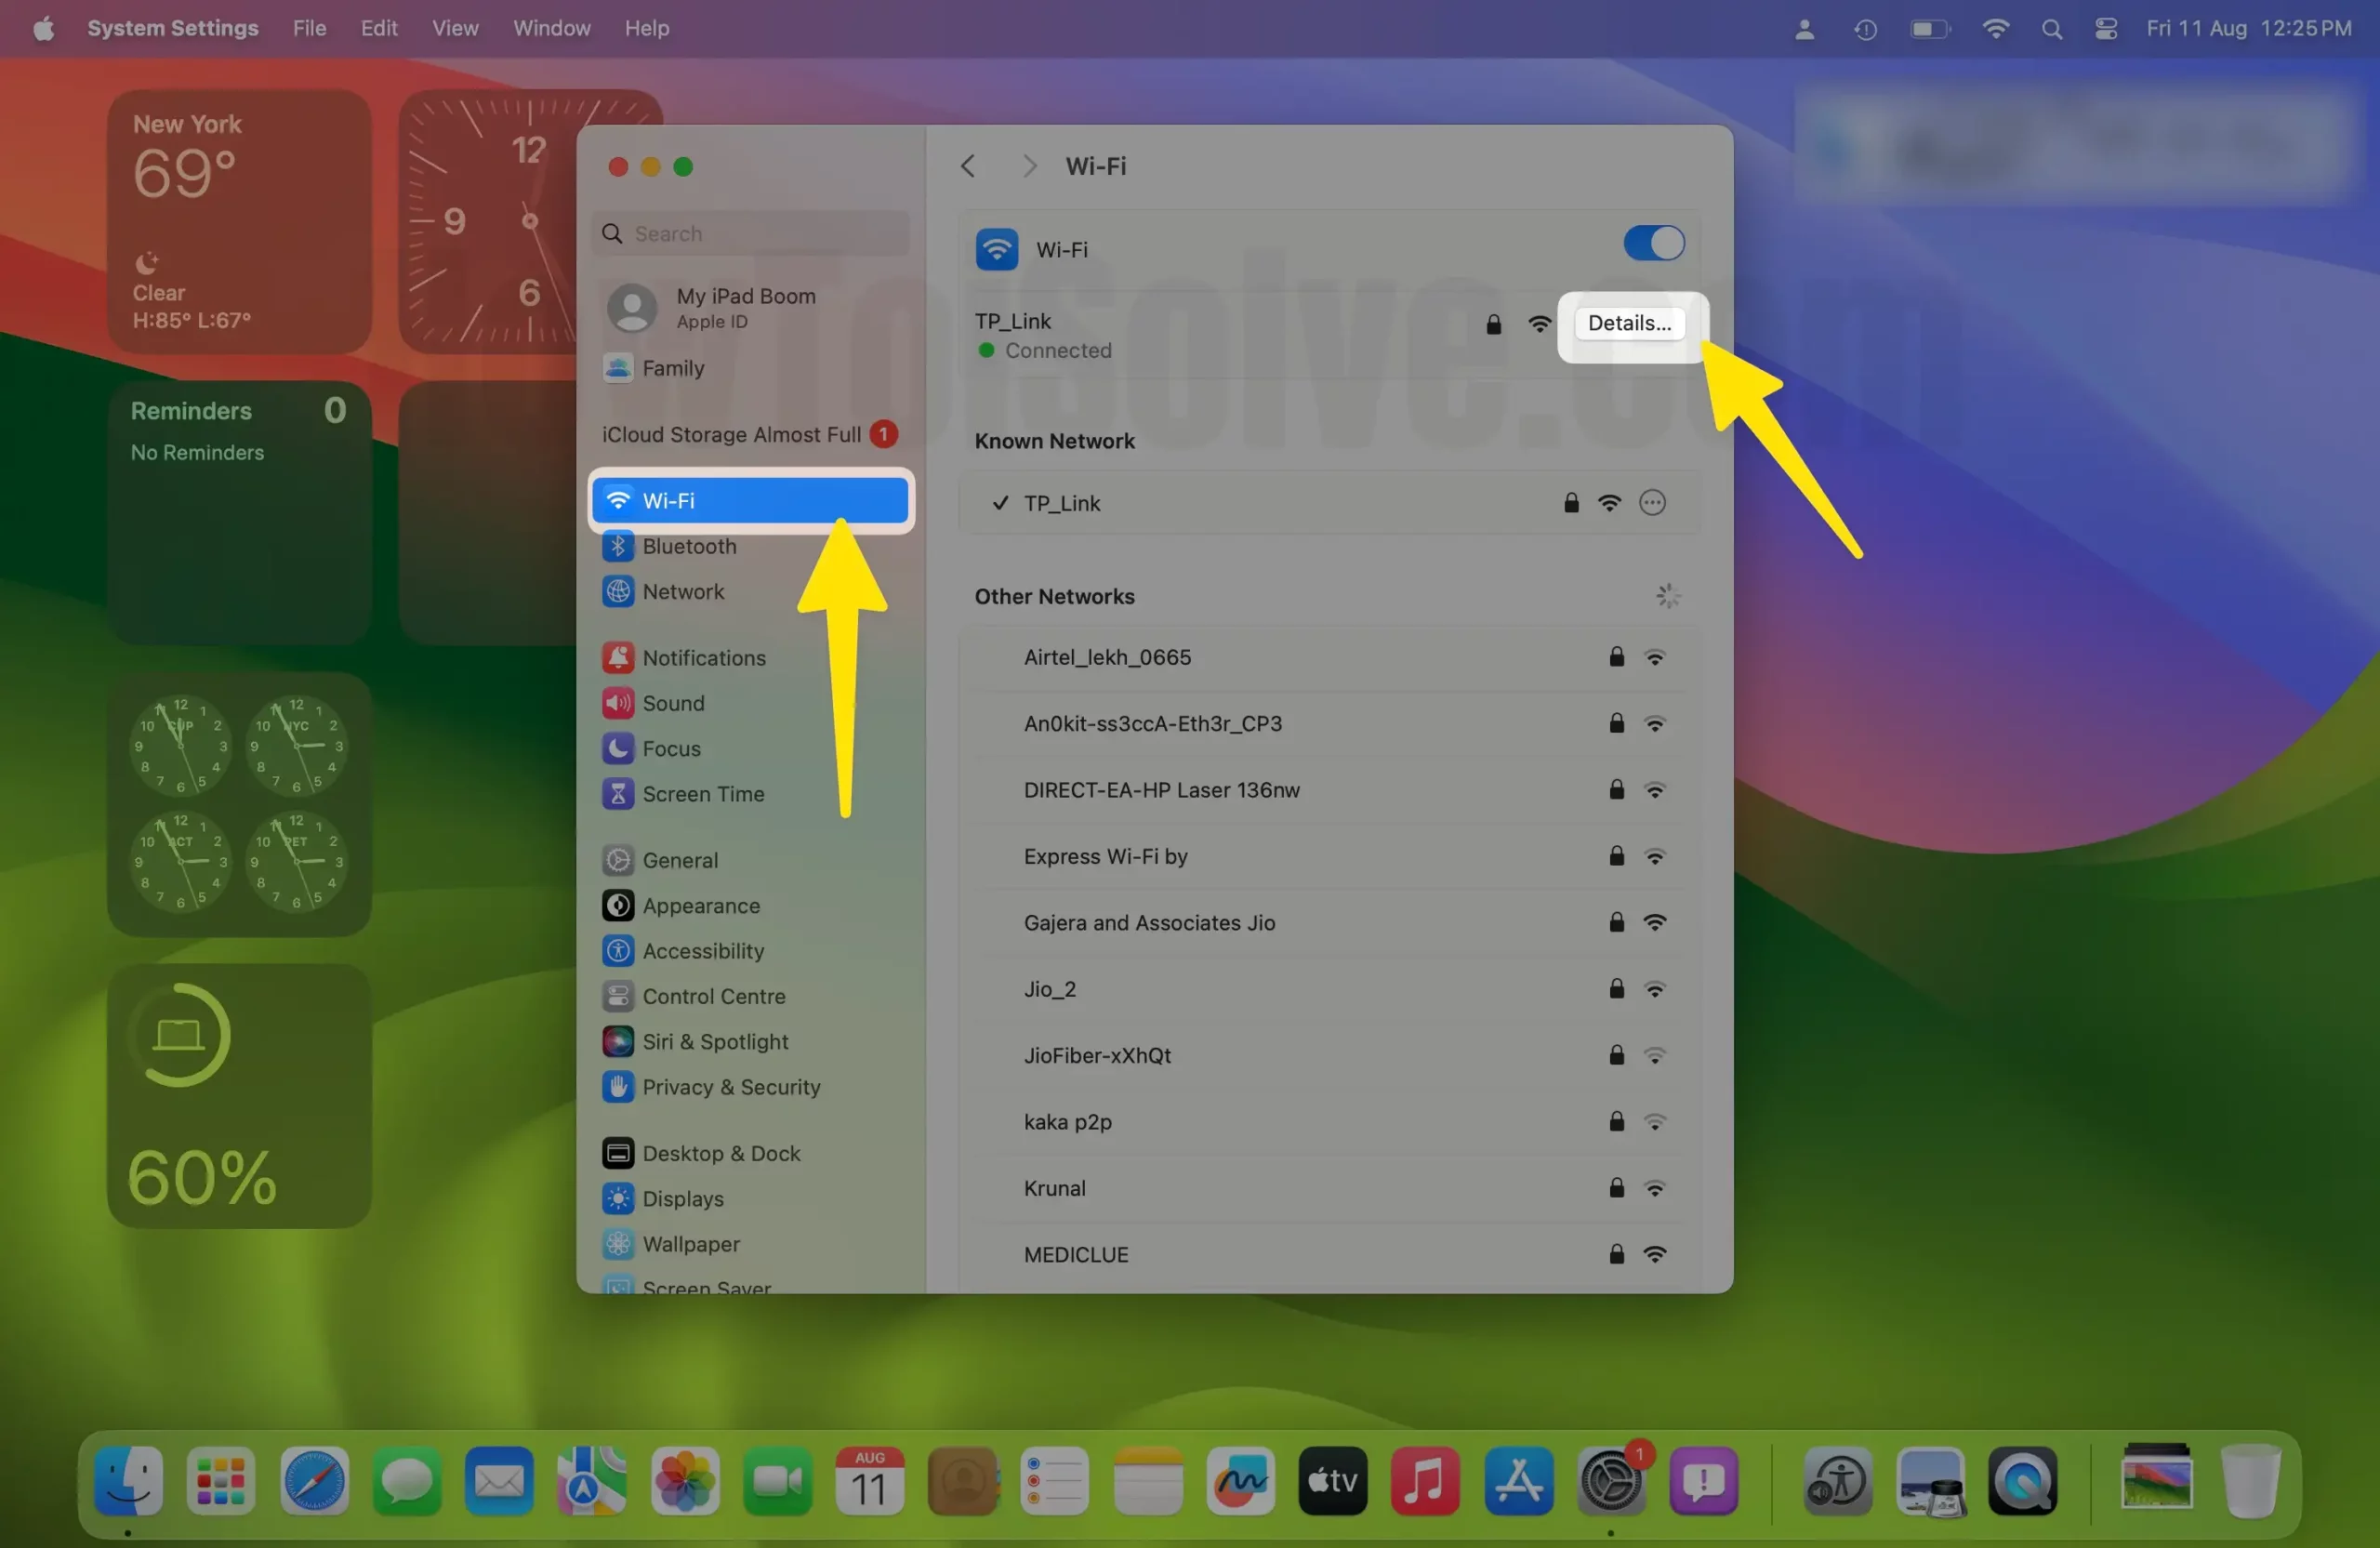 Open WiFi Settings on Mac